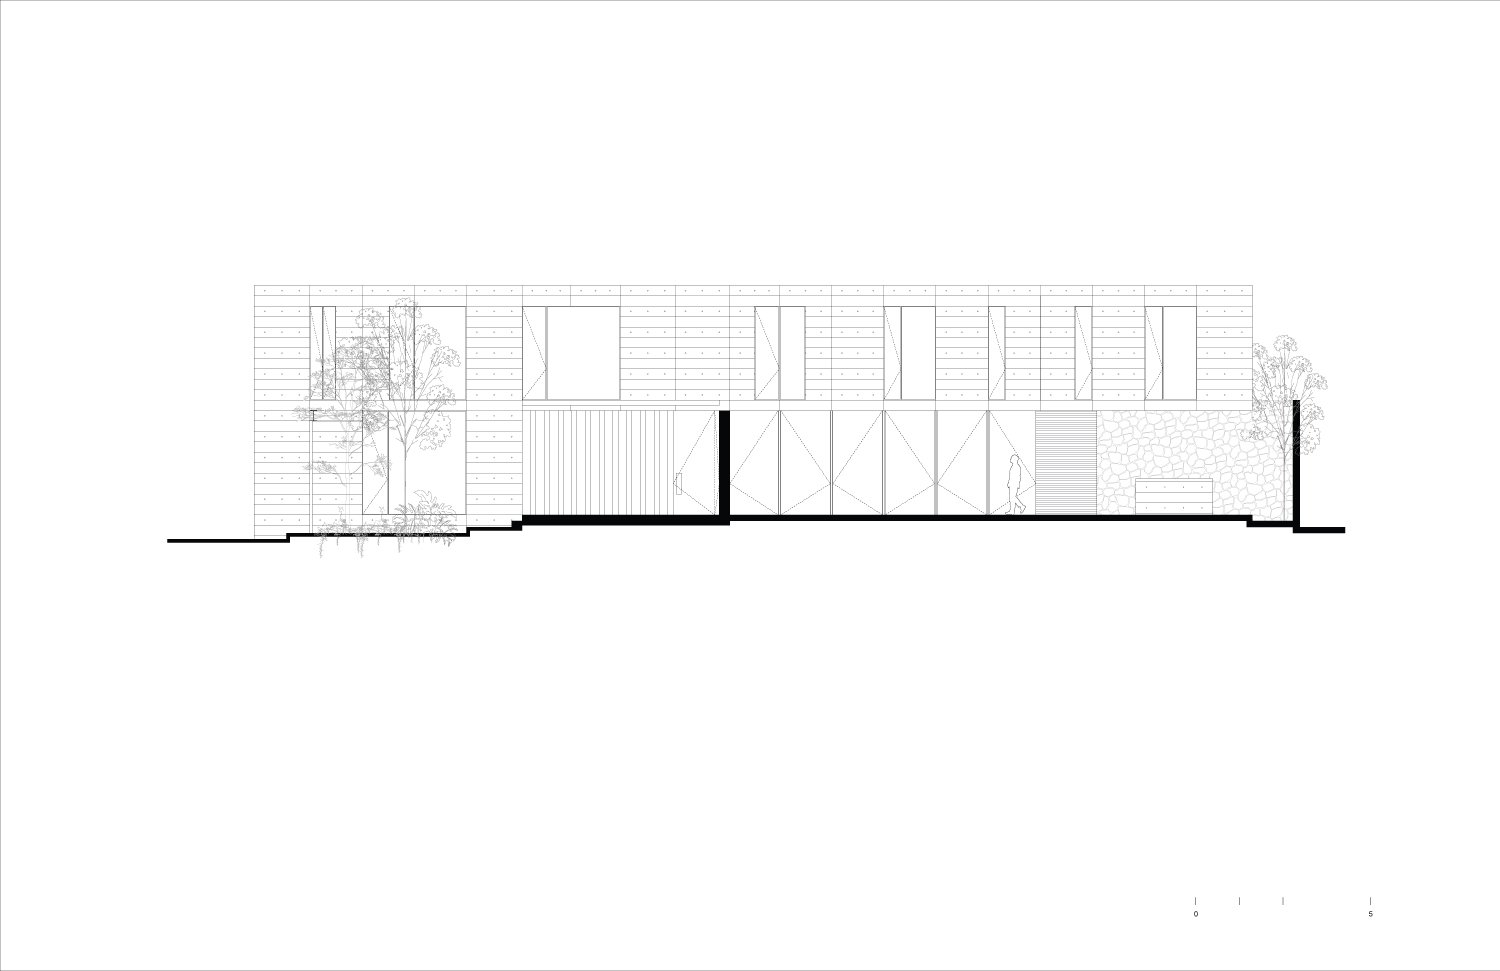 East Facade | Ignacio Urquiza, Bernardo Quinzaños, Centro de Colaboración Arquitectónica